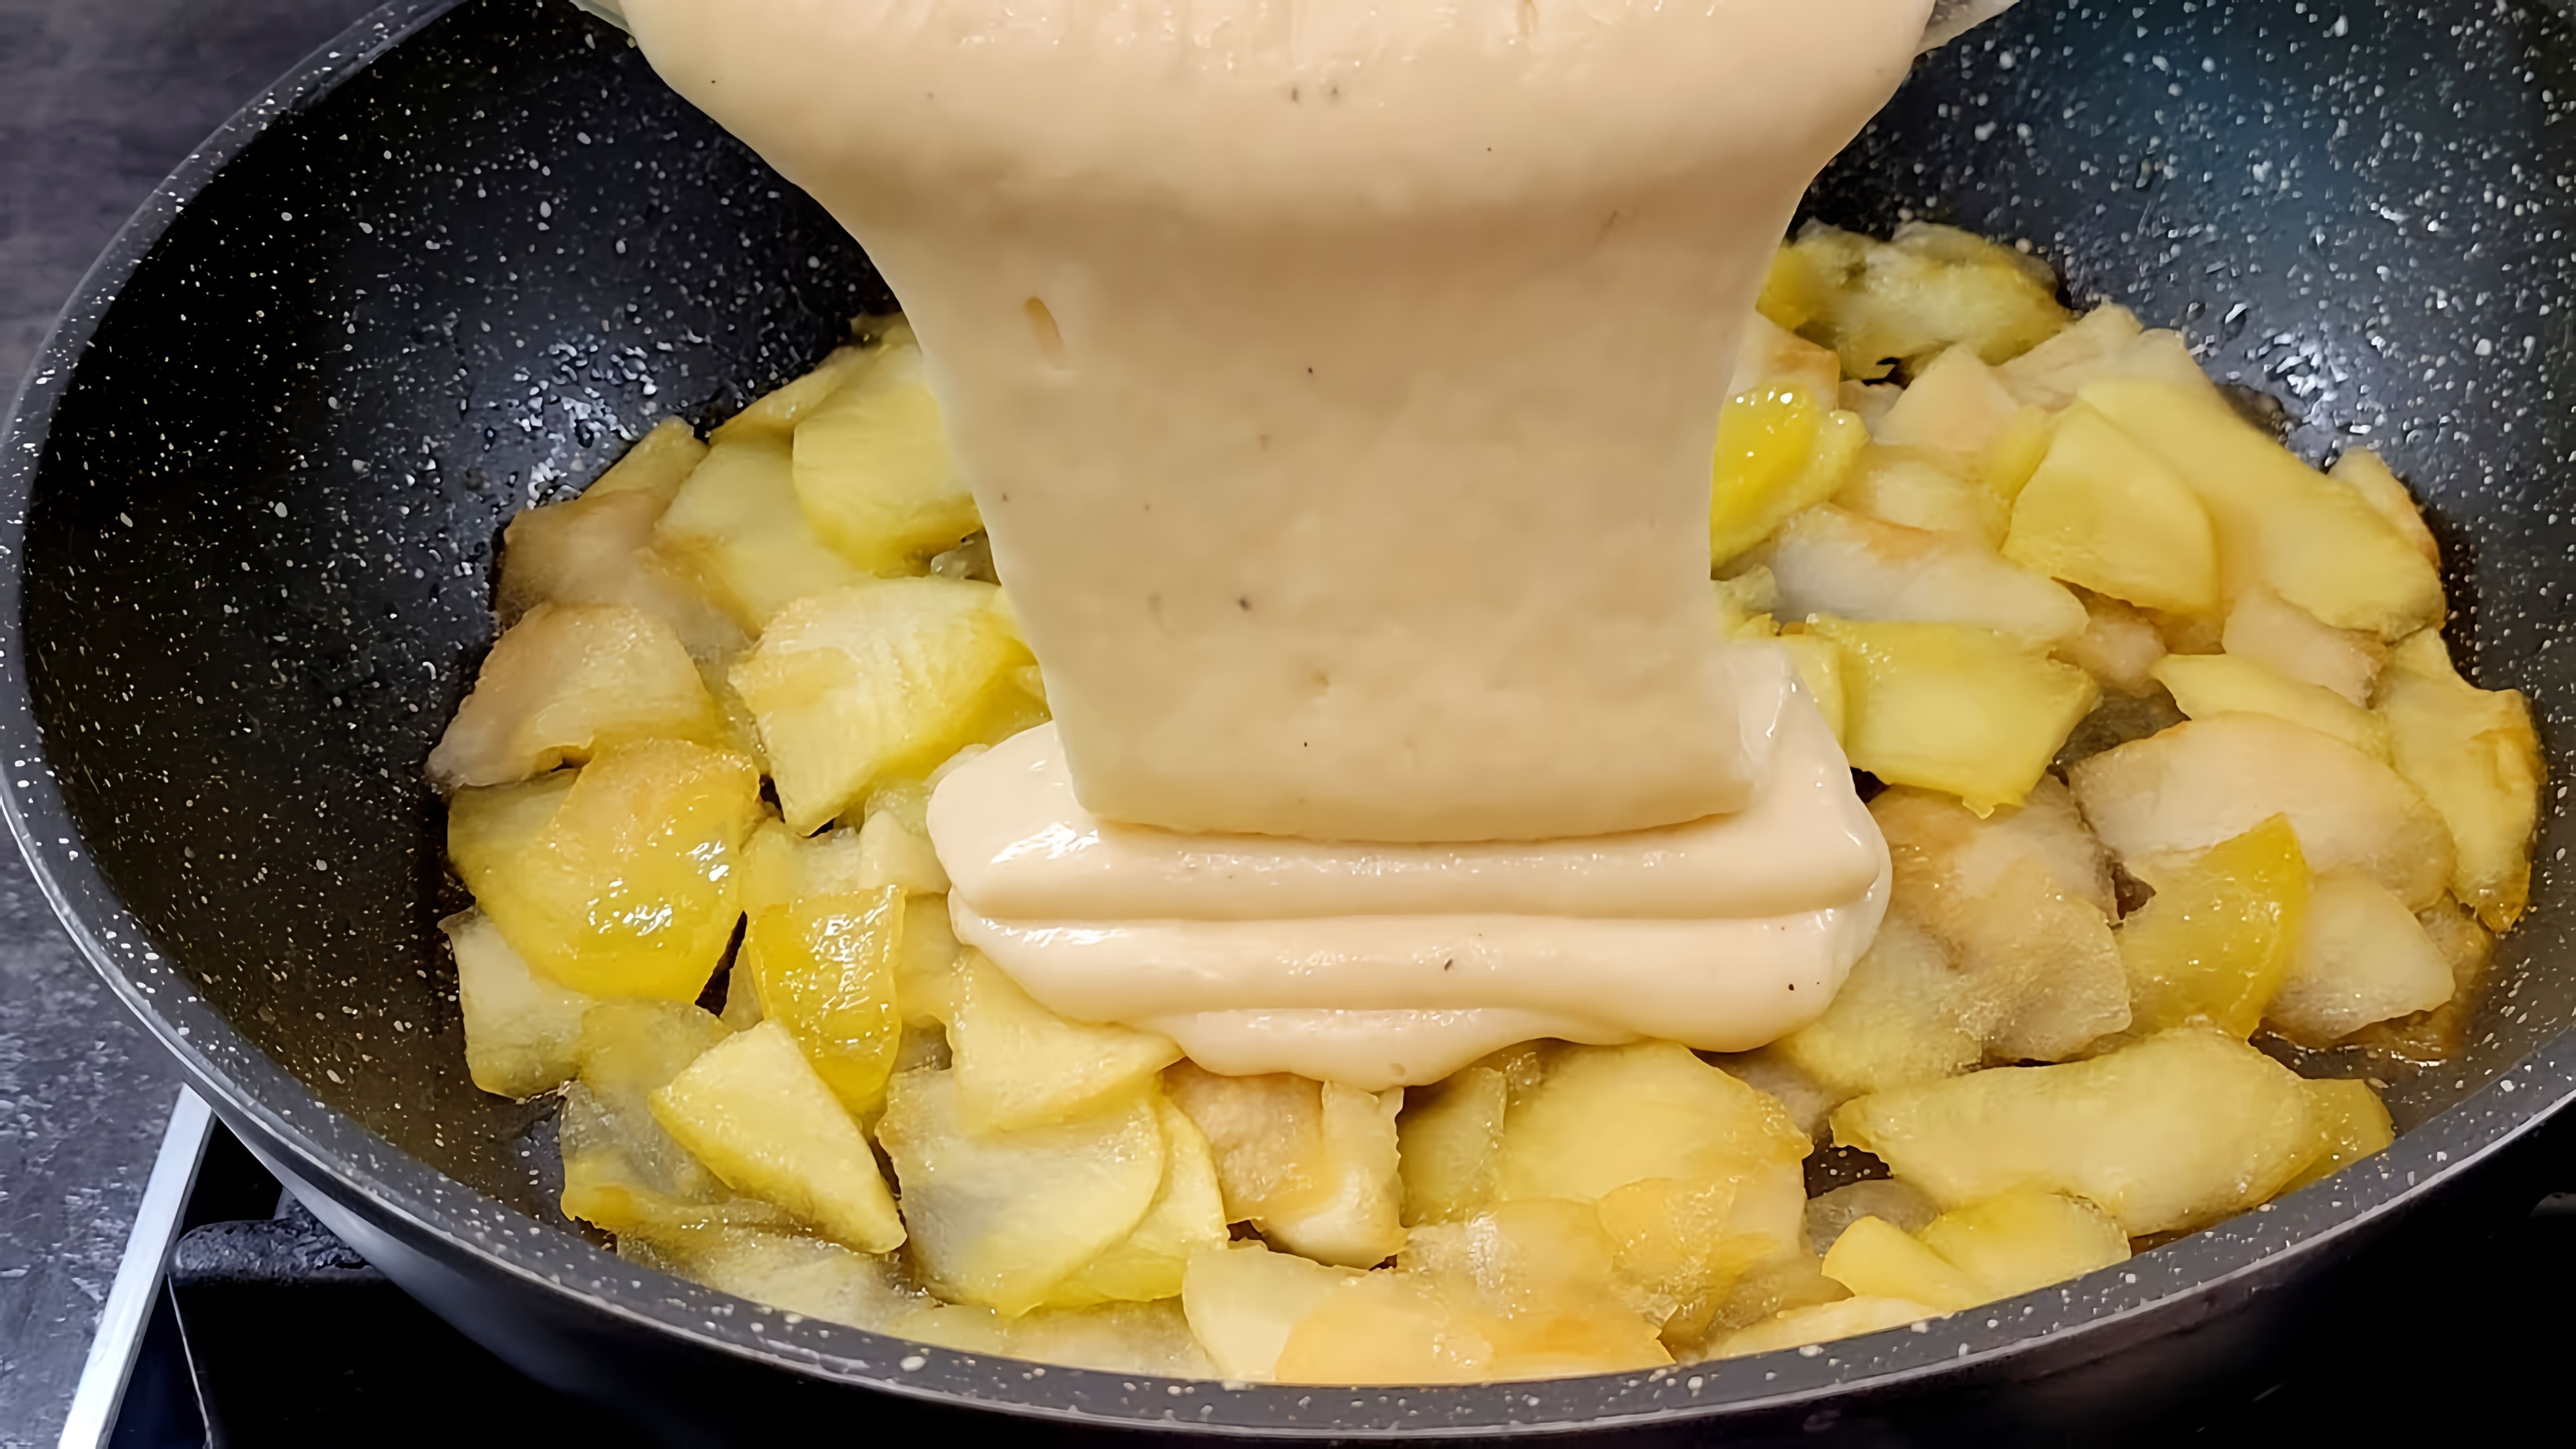 В этом видео демонстрируется процесс приготовления яблочного пирога на сковороде